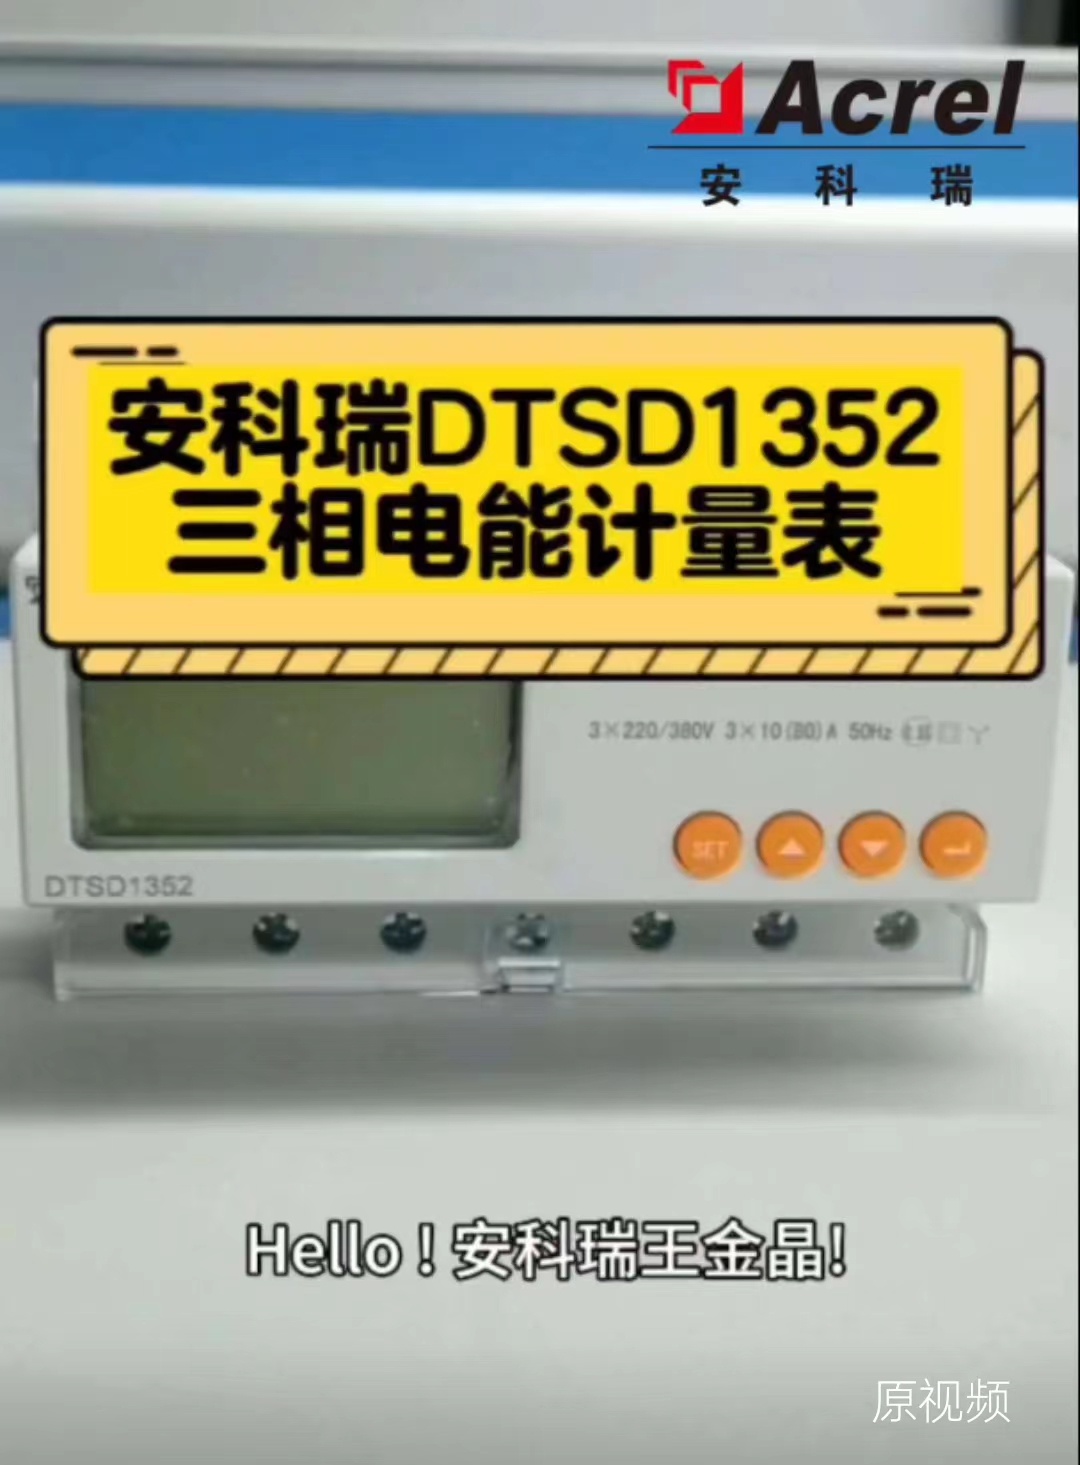 DTSD1352三相導軌式電能計量表，直接接入或經互感器接入，具有2-31次諧波分析和RS485接口